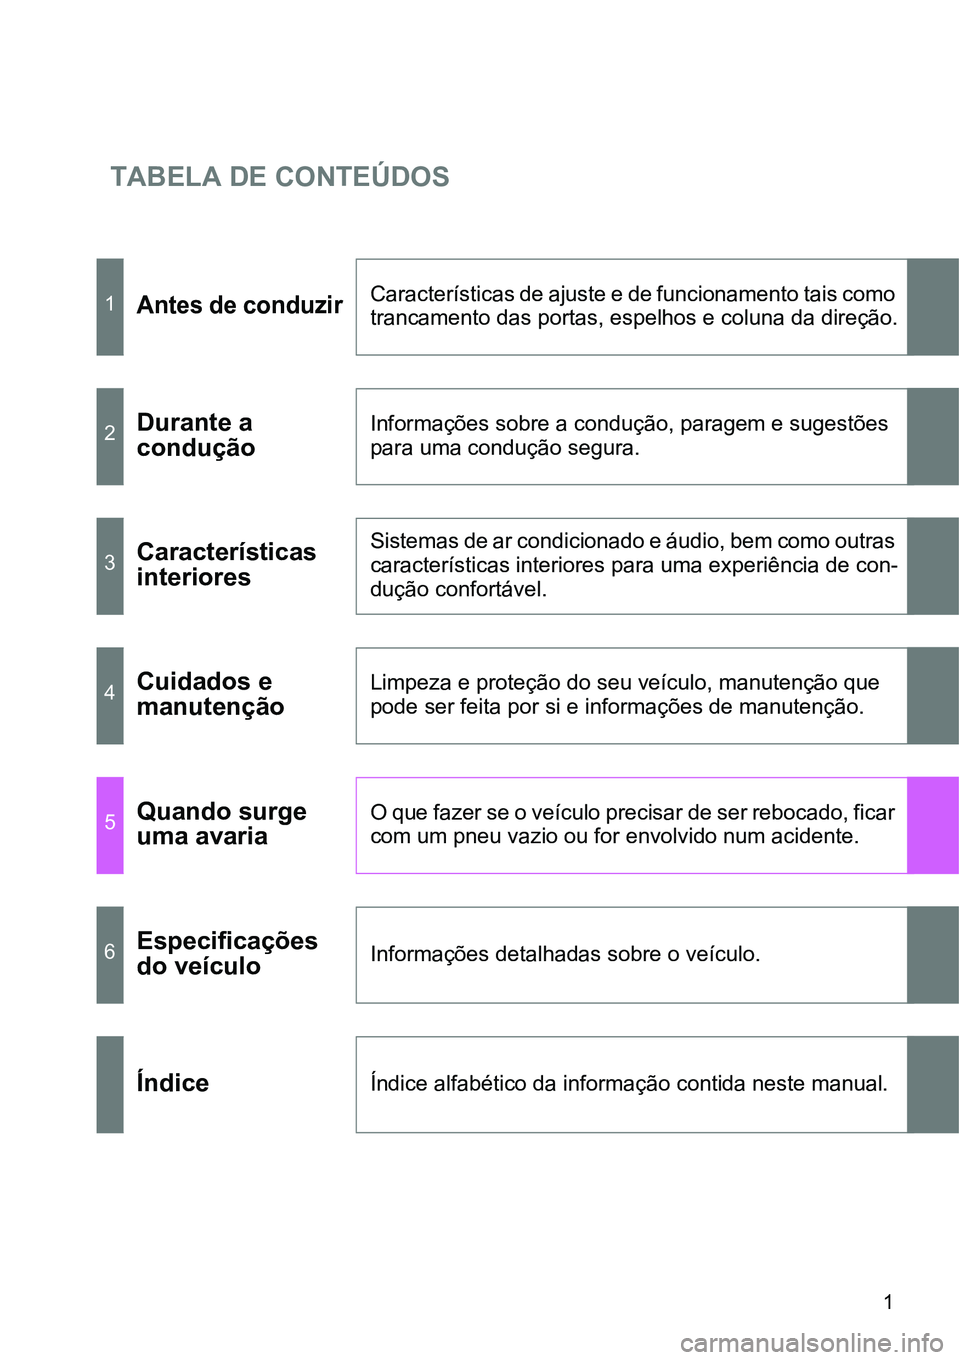 TOYOTA GT86 2018  Manual de utilização (in Portuguese) TABELA DE CONTEÚDOS
1
1Antes de conduzirCaracterísticas de ajuste e de funcionamento tais como 
trancamento das portas, espelhos e coluna da direção.
2Durante a 
conduçãoInformações sobre a co